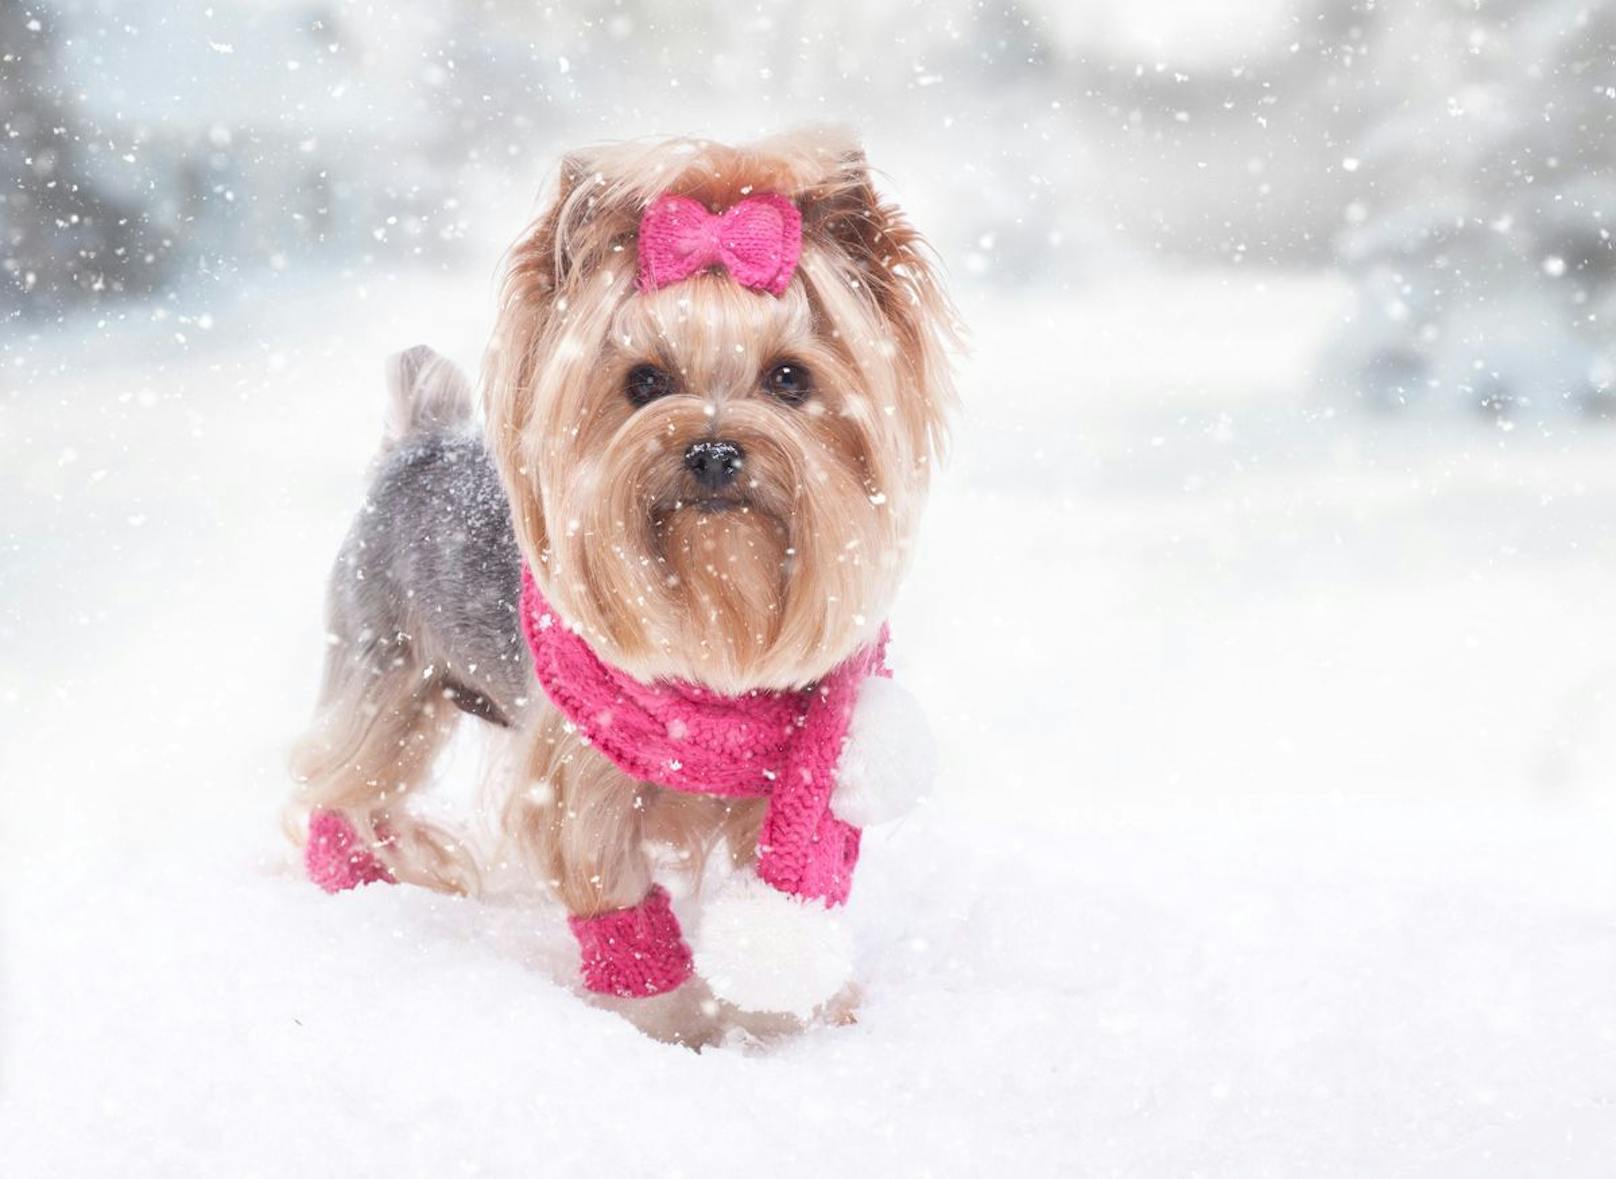 Der Yorkshire Terrier muss regelmäßig zum Hundefriseur, weil sein seidiges Fell sonst bei Regen und Schnee verfilzt. Mantel und gut abtrocknen.&nbsp;